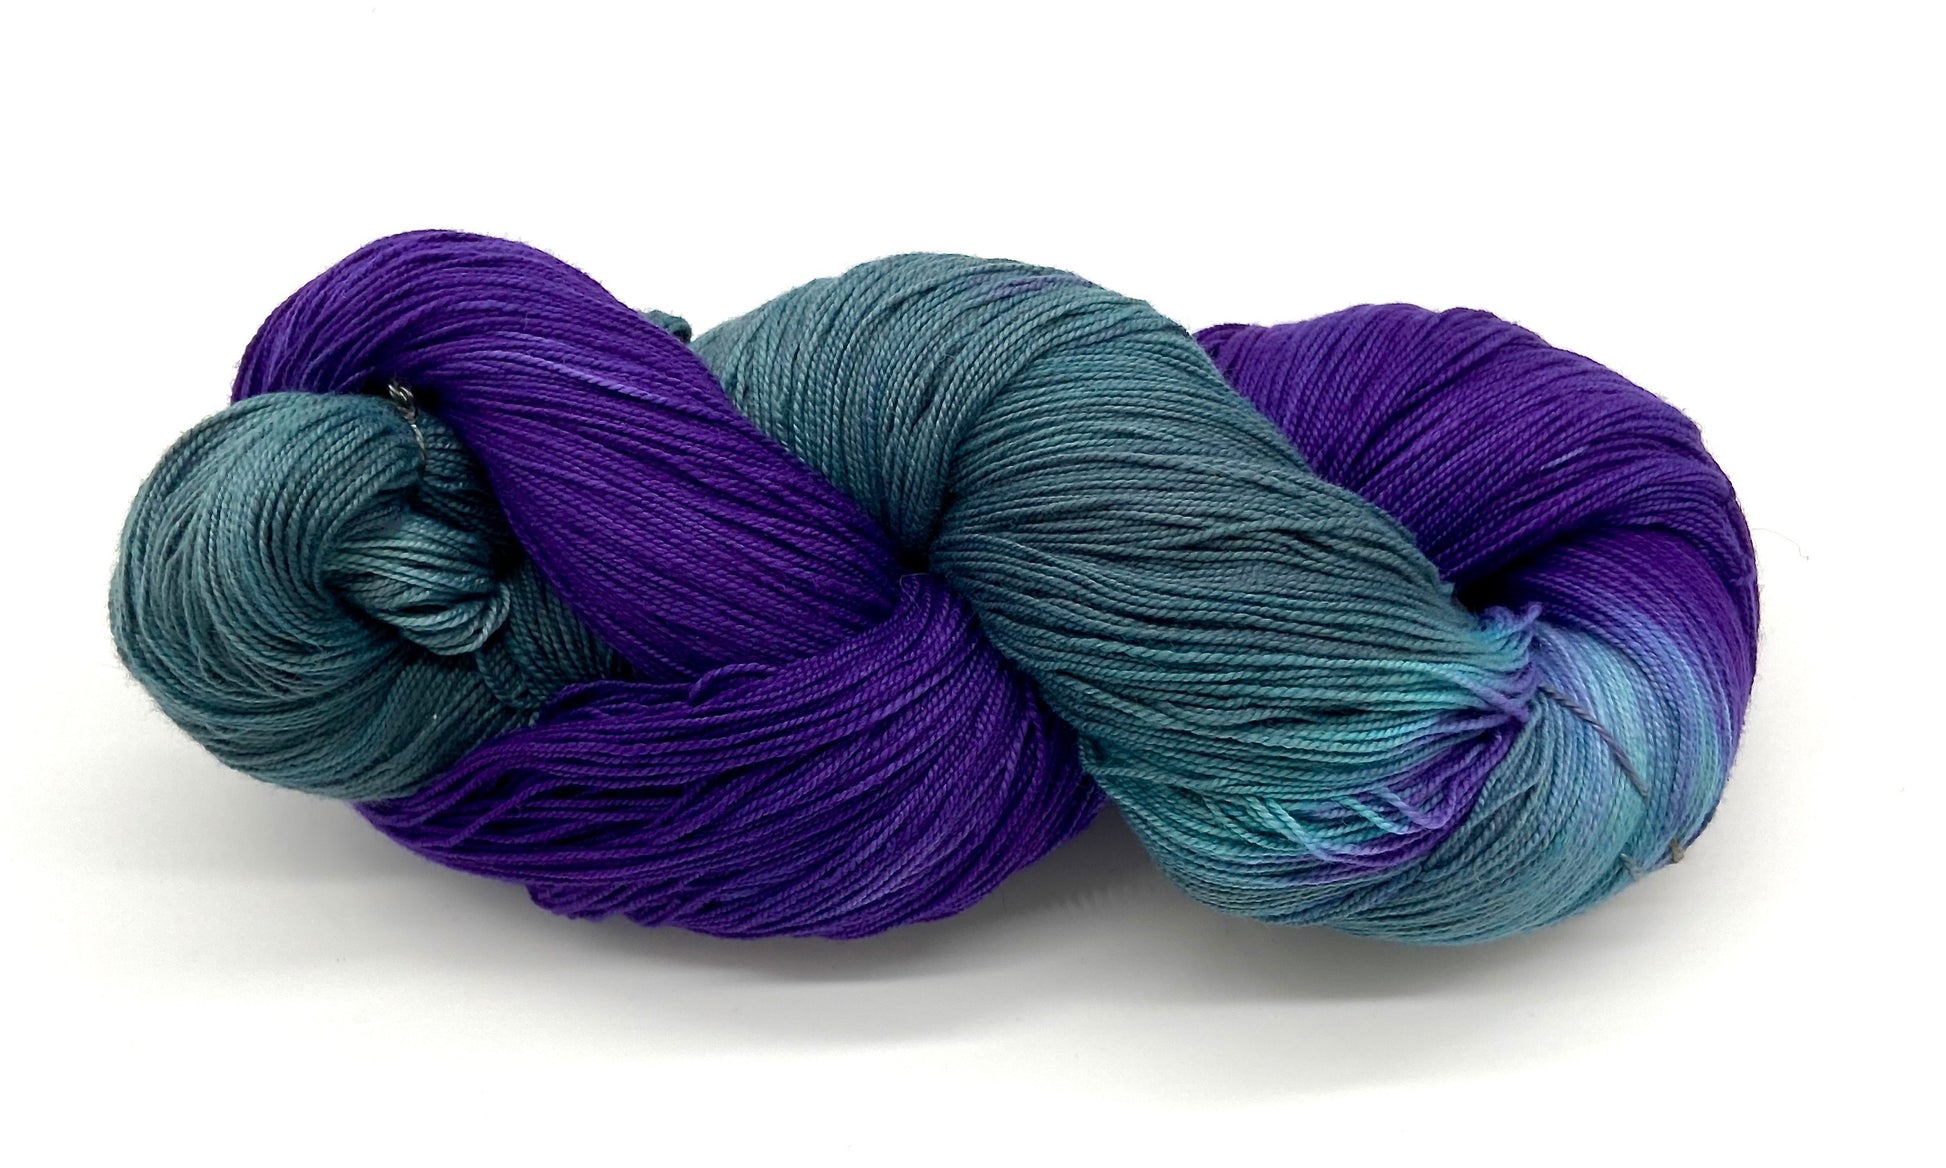 Semi Solid  Hand Dyed Cotton 8/2 - Sydney Sogol, Hand dyed Yarn, semi-solid-cotton-8-2, hand dyed yarn, hand painted yarn